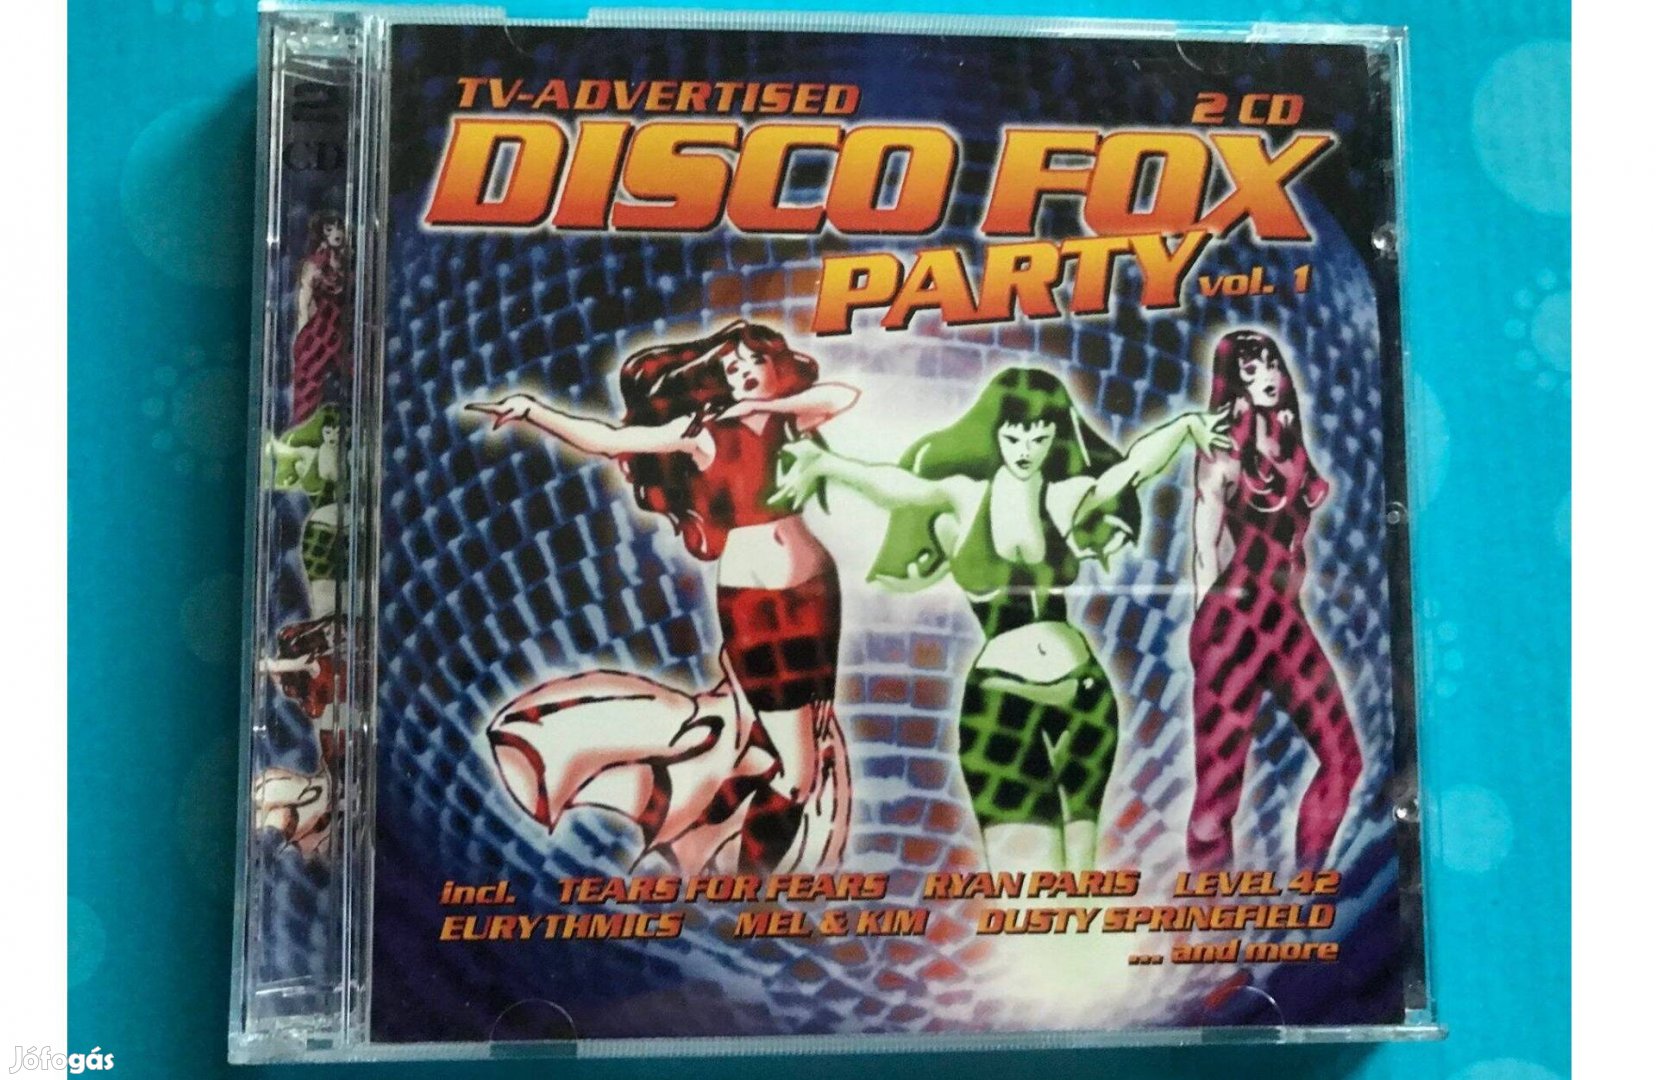 Disco fox party vol.1. CD dupla CD (Zyx Music) új, Posta megoldható